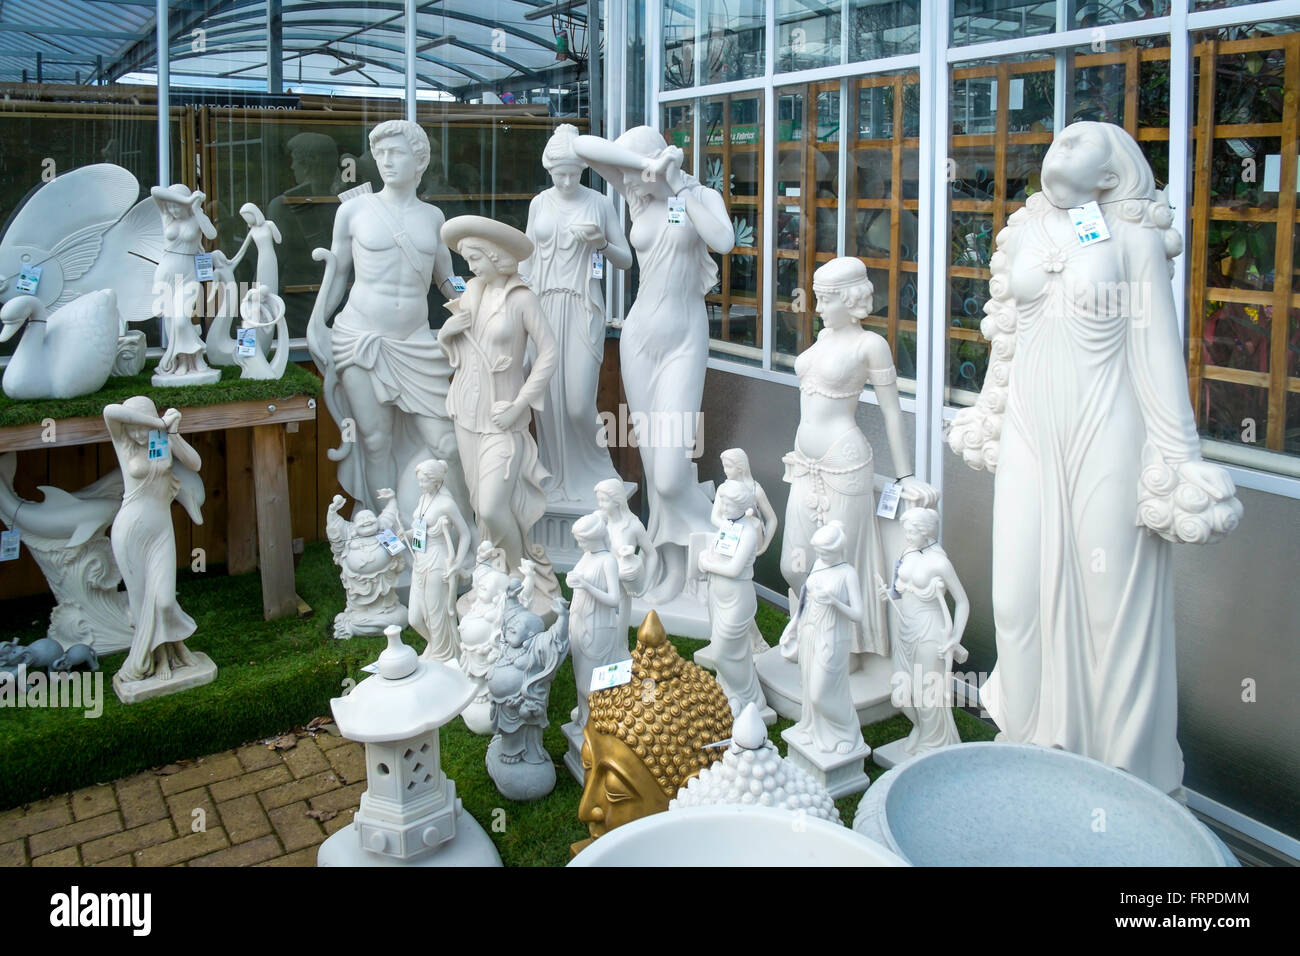 Figuras y Estatuas Jardín — jardineriadelvalles